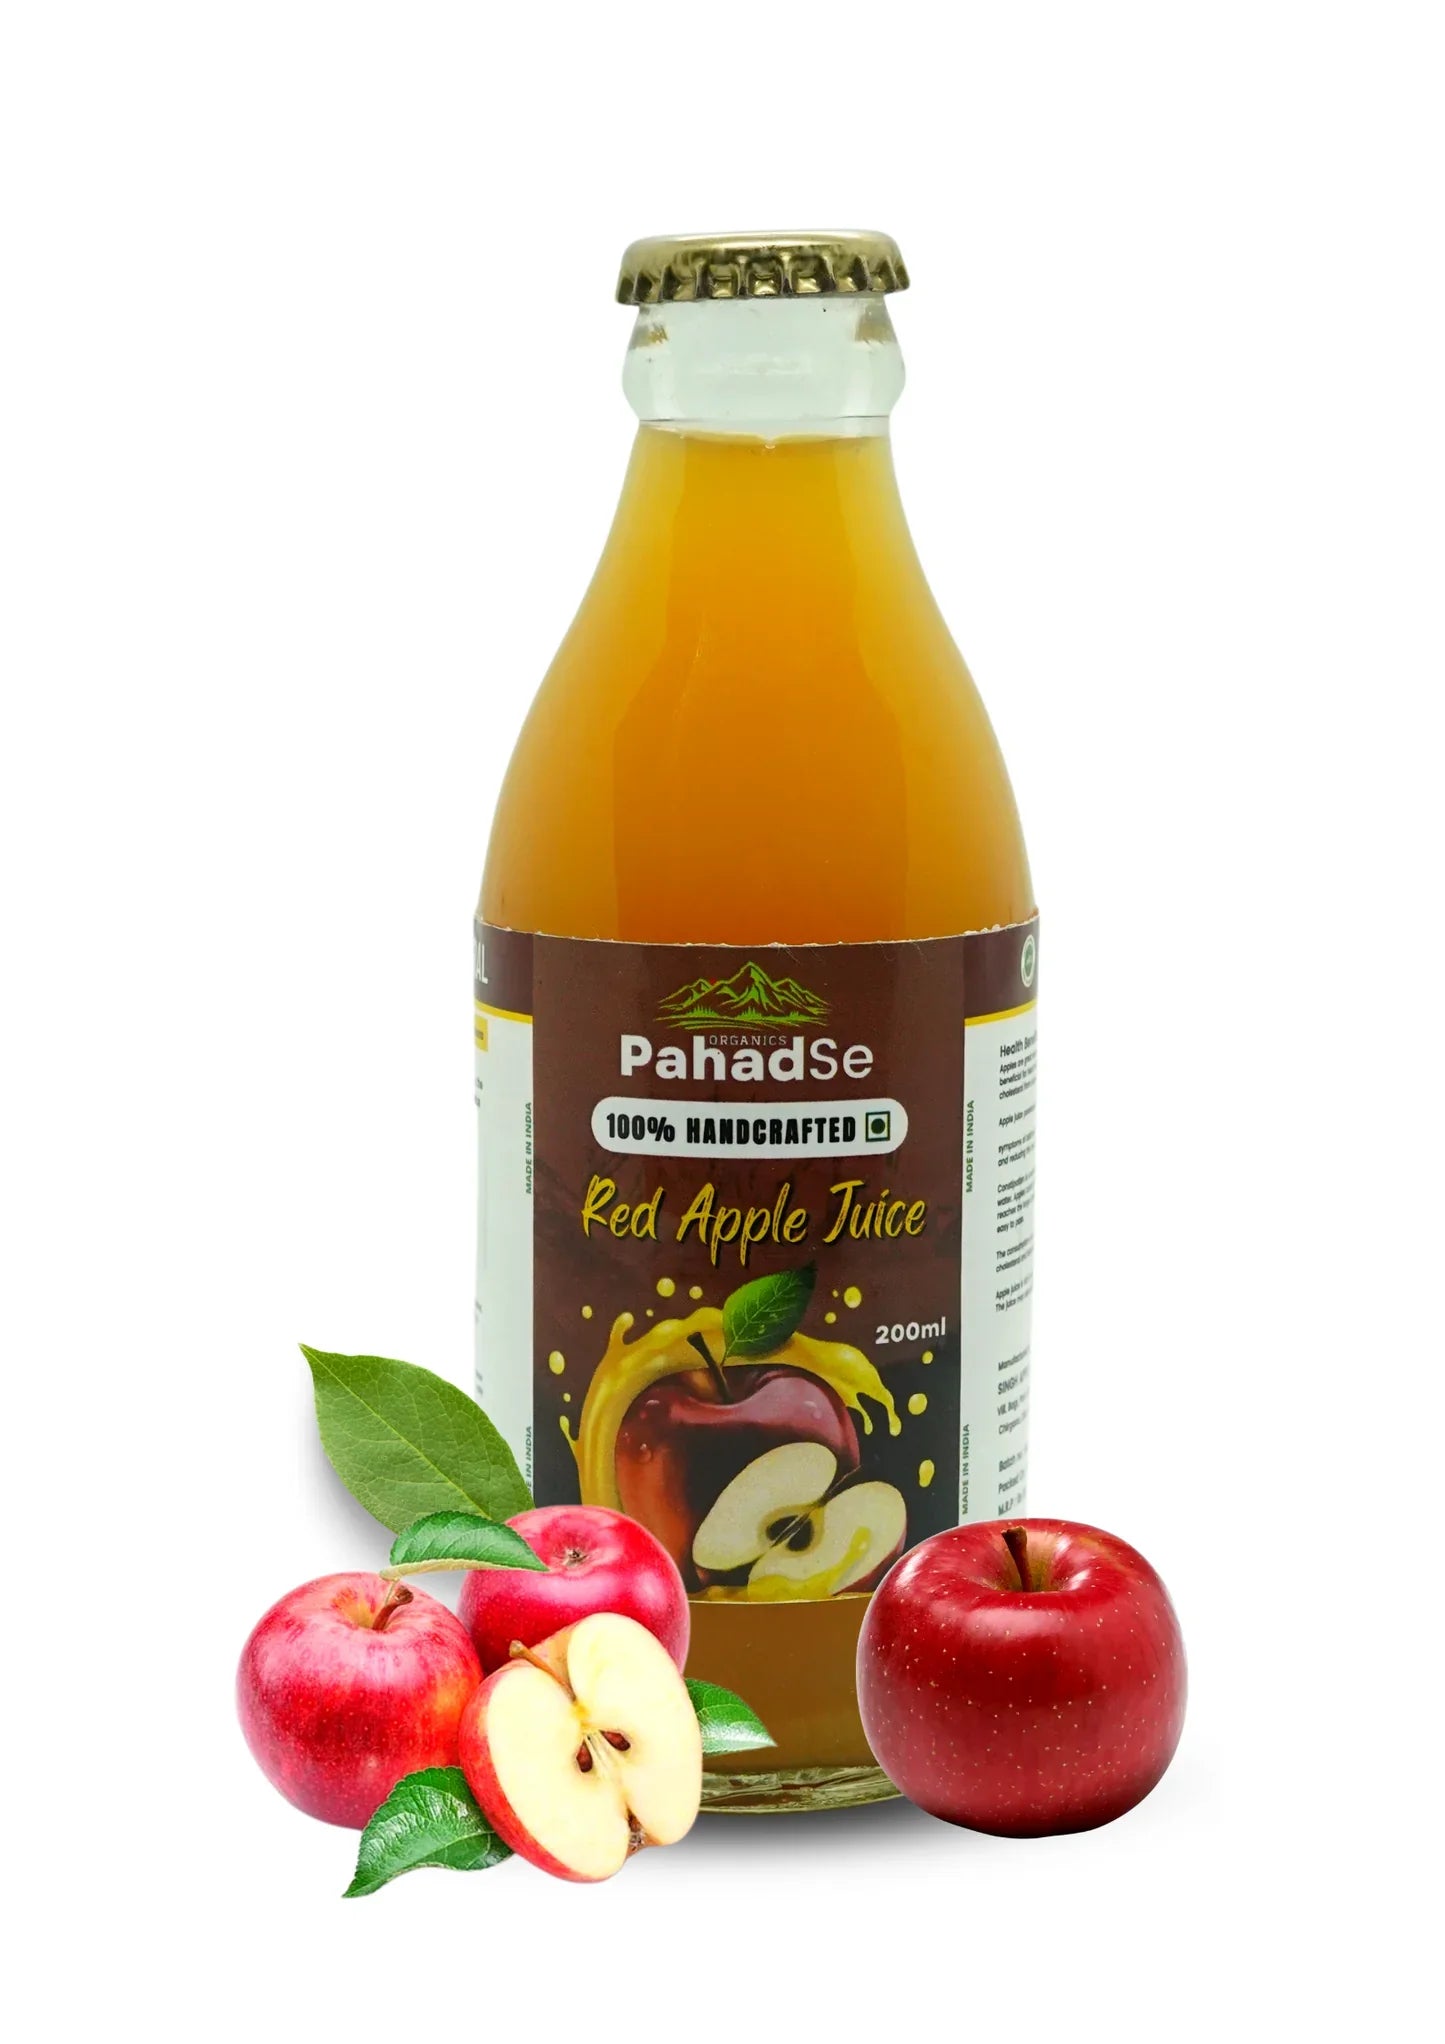 Red Apple Juice (Pahadse)